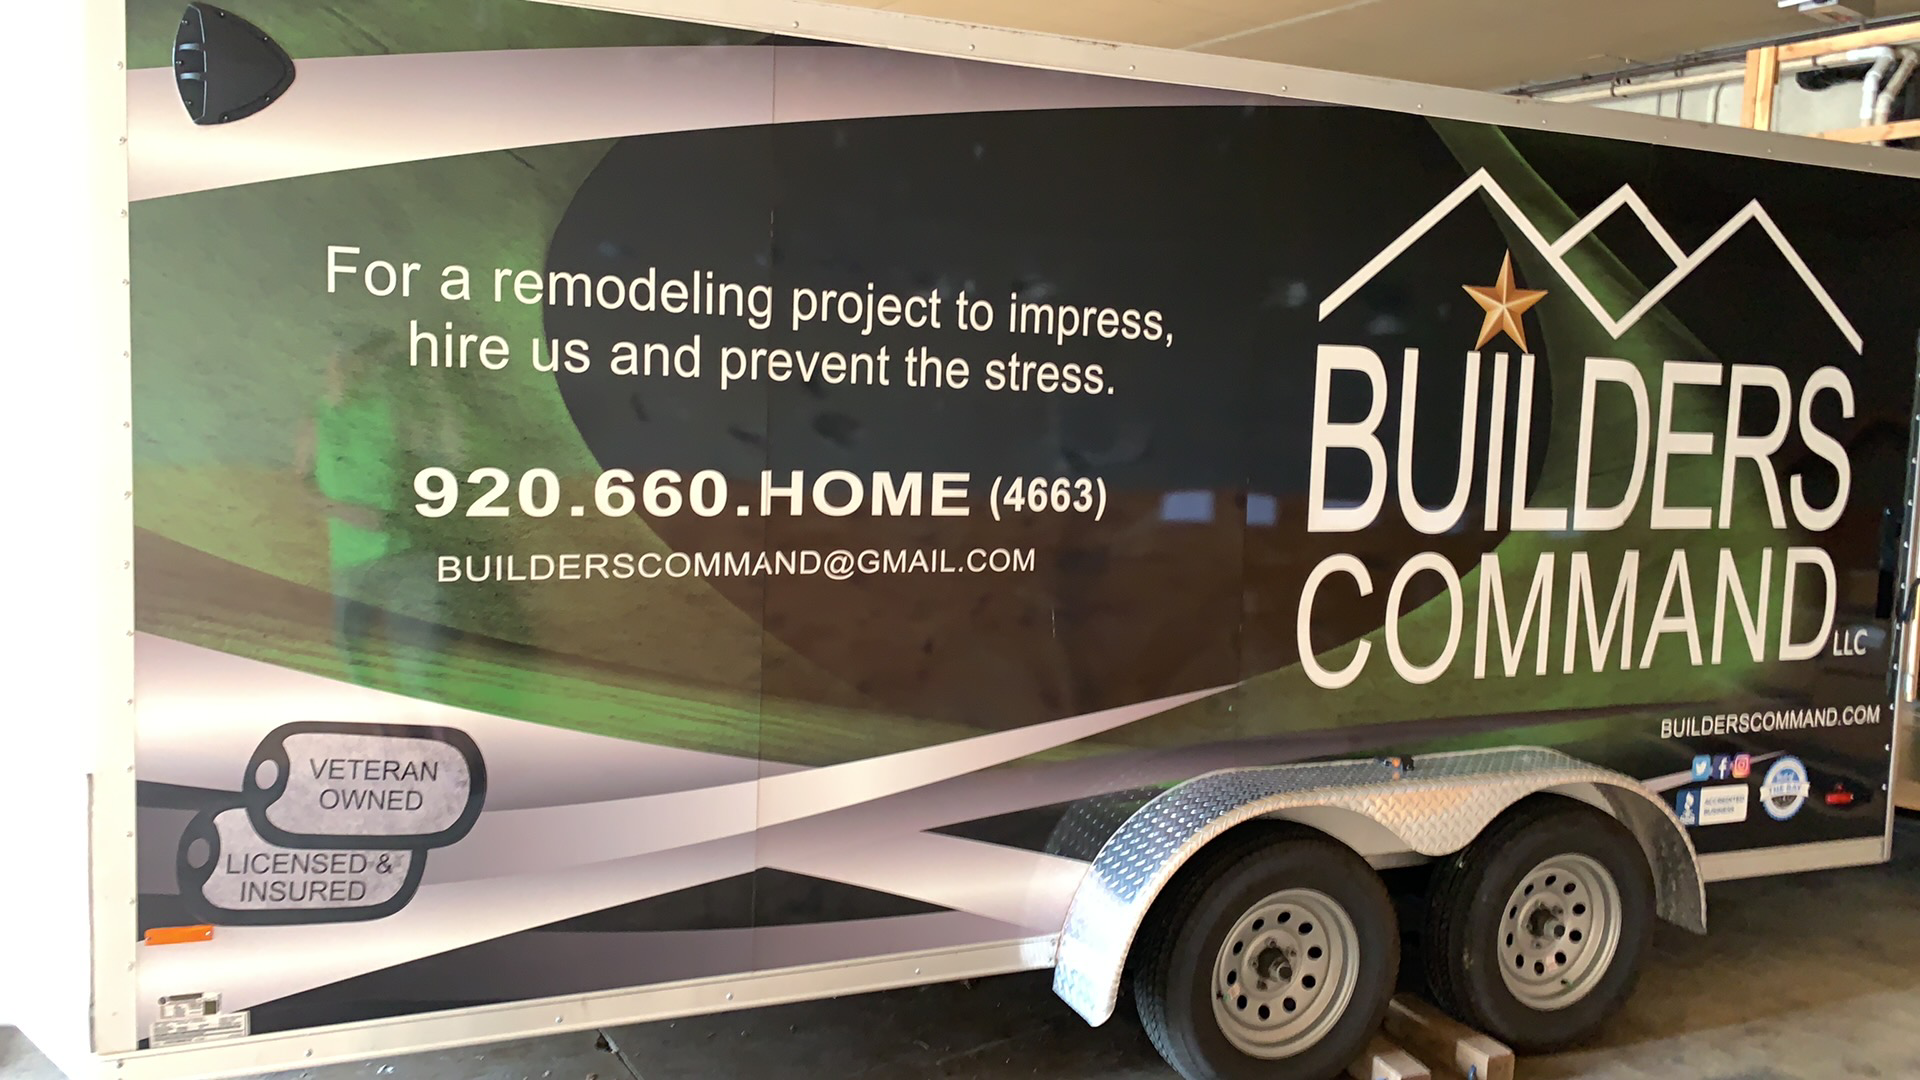 Builders Command LLC